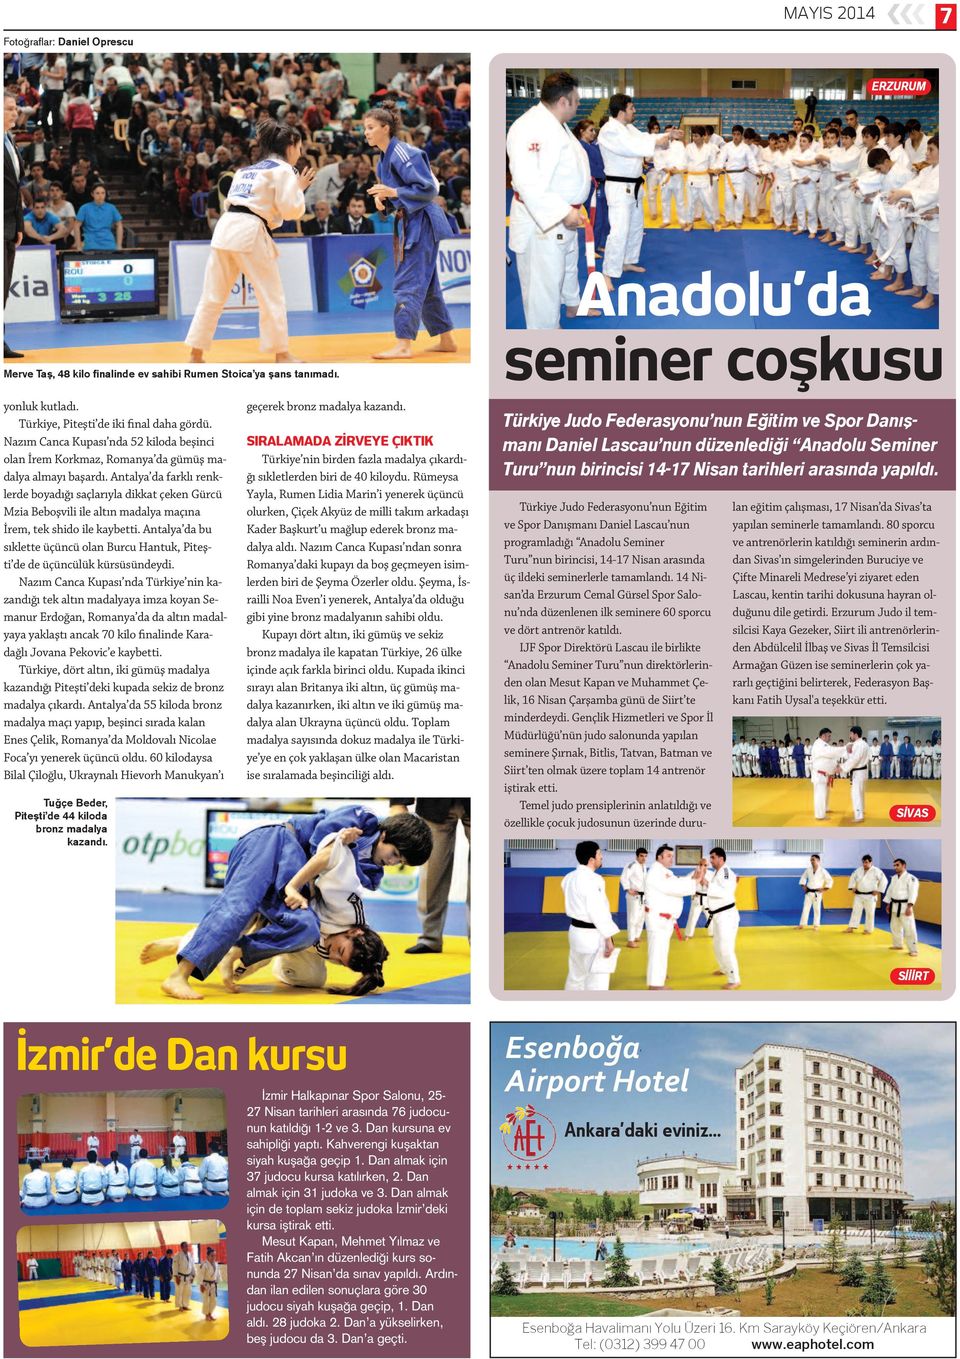 Antalya da farklı renklerde boyadığı saçlarıyla dikkat çeken Gürcü Mzia Beboşvili ile altın madalya maçına İrem, tek shido ile kaybetti.